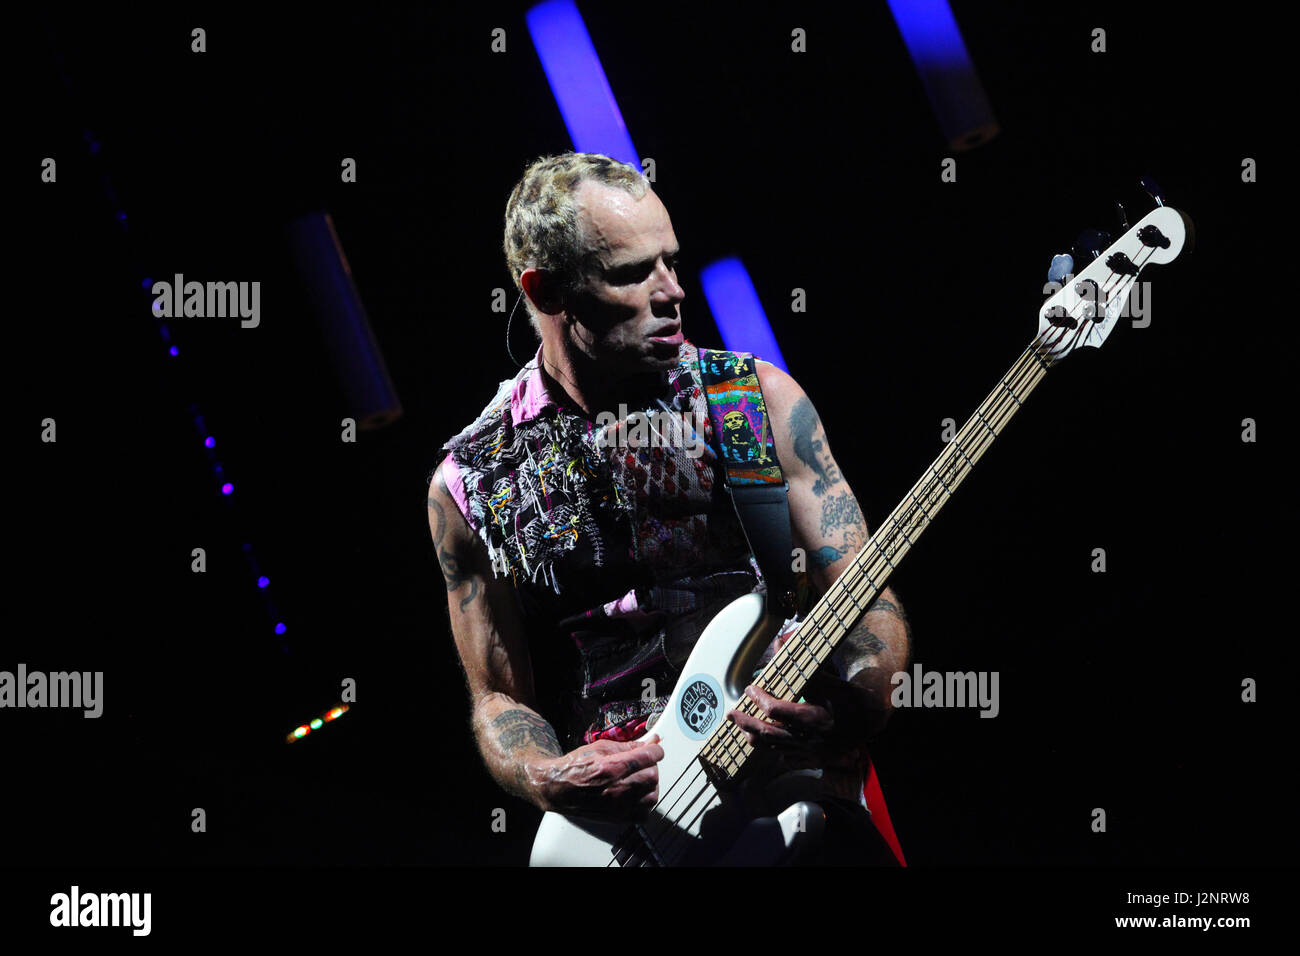 Miami, FL, EEUU. 29 abr, 2017. Florida, EE.UU. - Estados Unidos - La Red Hot Chili Peppers realizaron su funk rock canciones durante un show en el AmericanAirlines Arena en Miami el 29 de abril de crédito: Sun-Sentinel/Zuma alambre/Alamy Live News Foto de stock